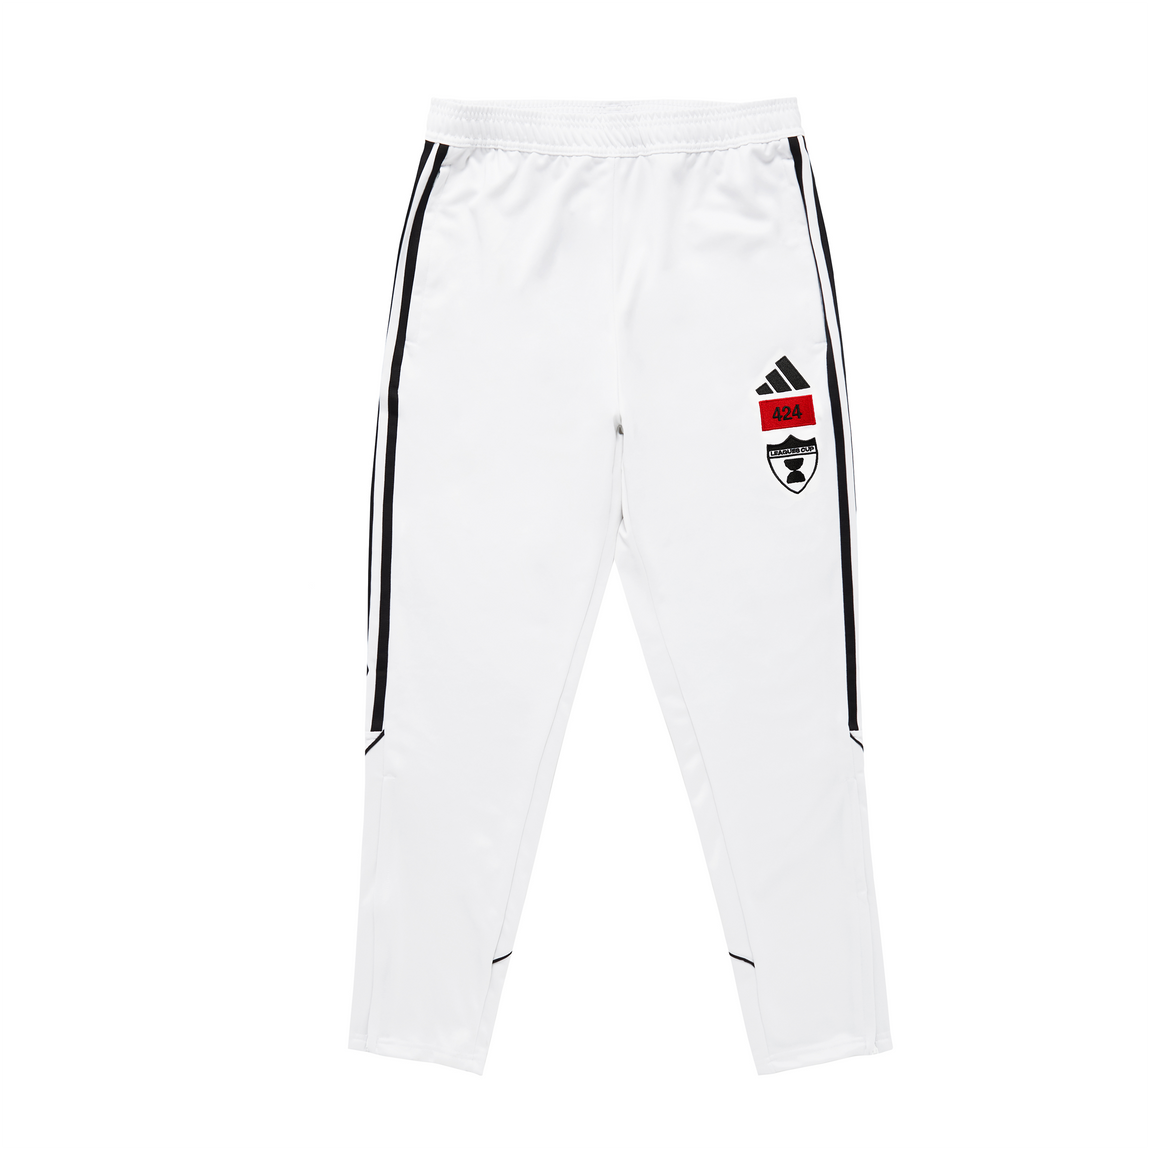 Adidas x 424 MLS Tiro23 League Pant (White) - Adidas x 424 MLS Tiro23 League Pant (White) - 